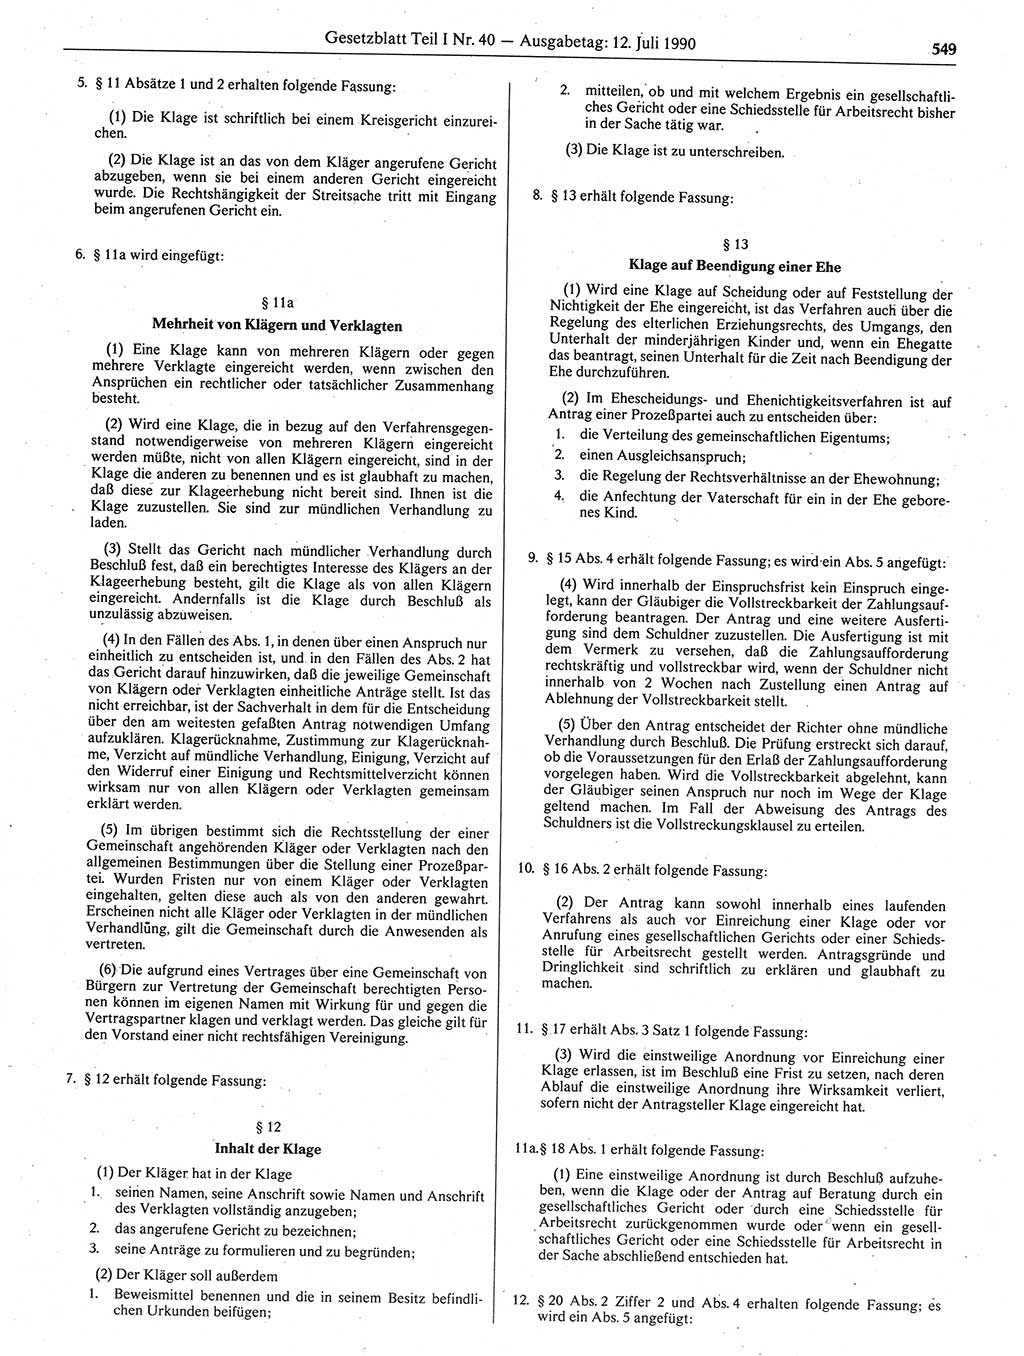 Gesetzblatt (GBl.) der Deutschen Demokratischen Republik (DDR) Teil Ⅰ 1990, Seite 549 (GBl. DDR Ⅰ 1990, S. 549)